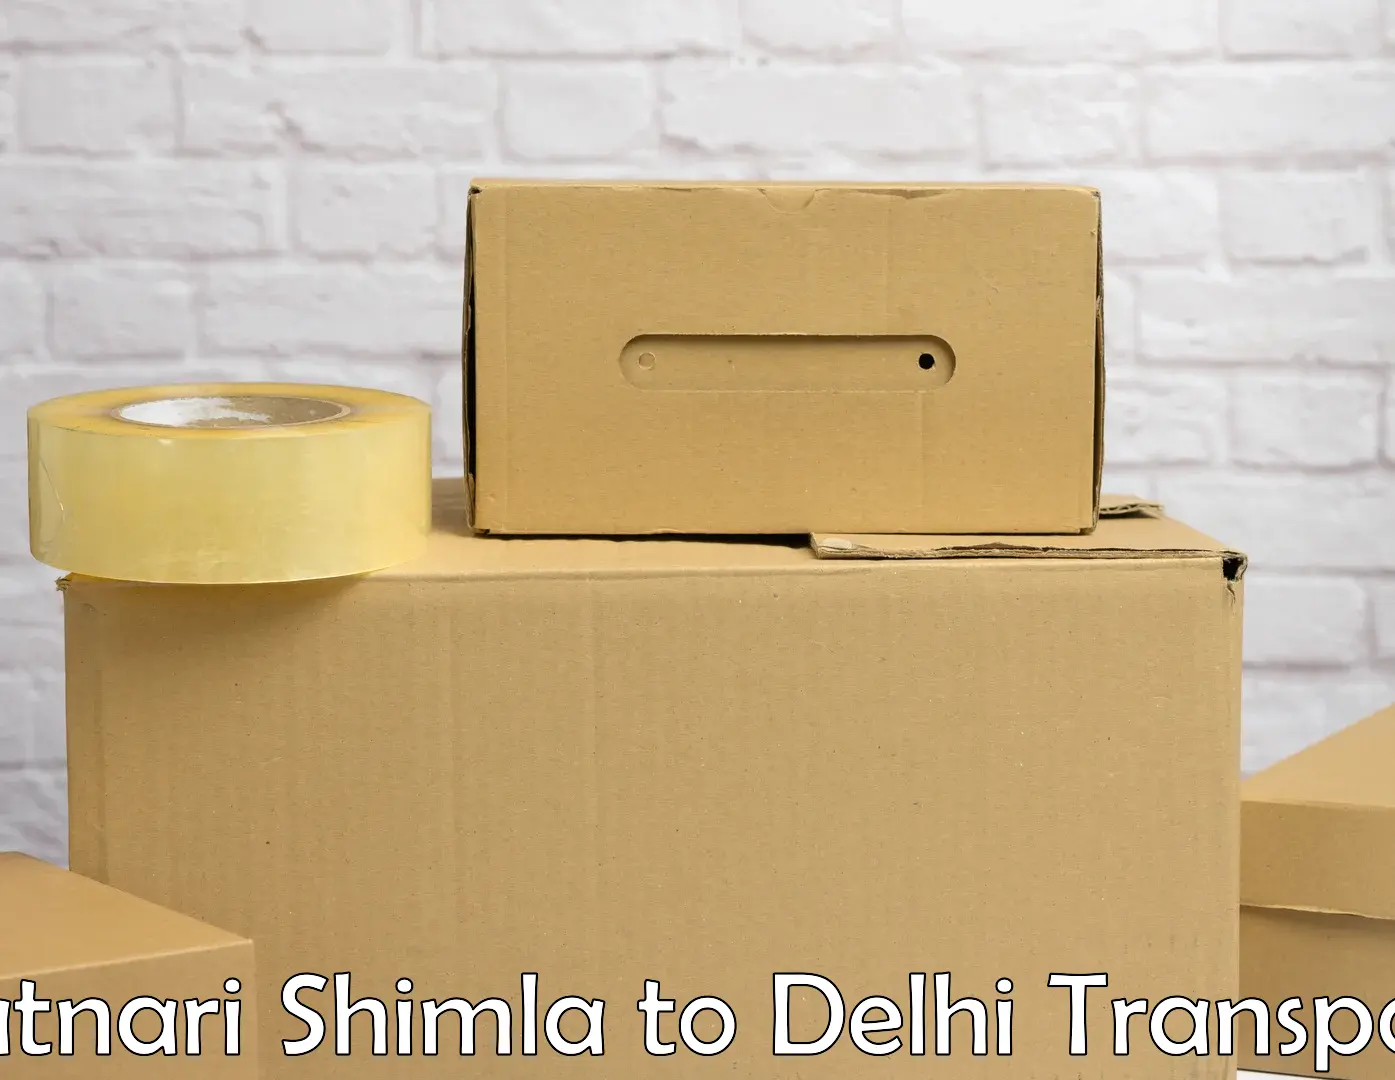 Express transport services Ratnari Shimla to Delhi